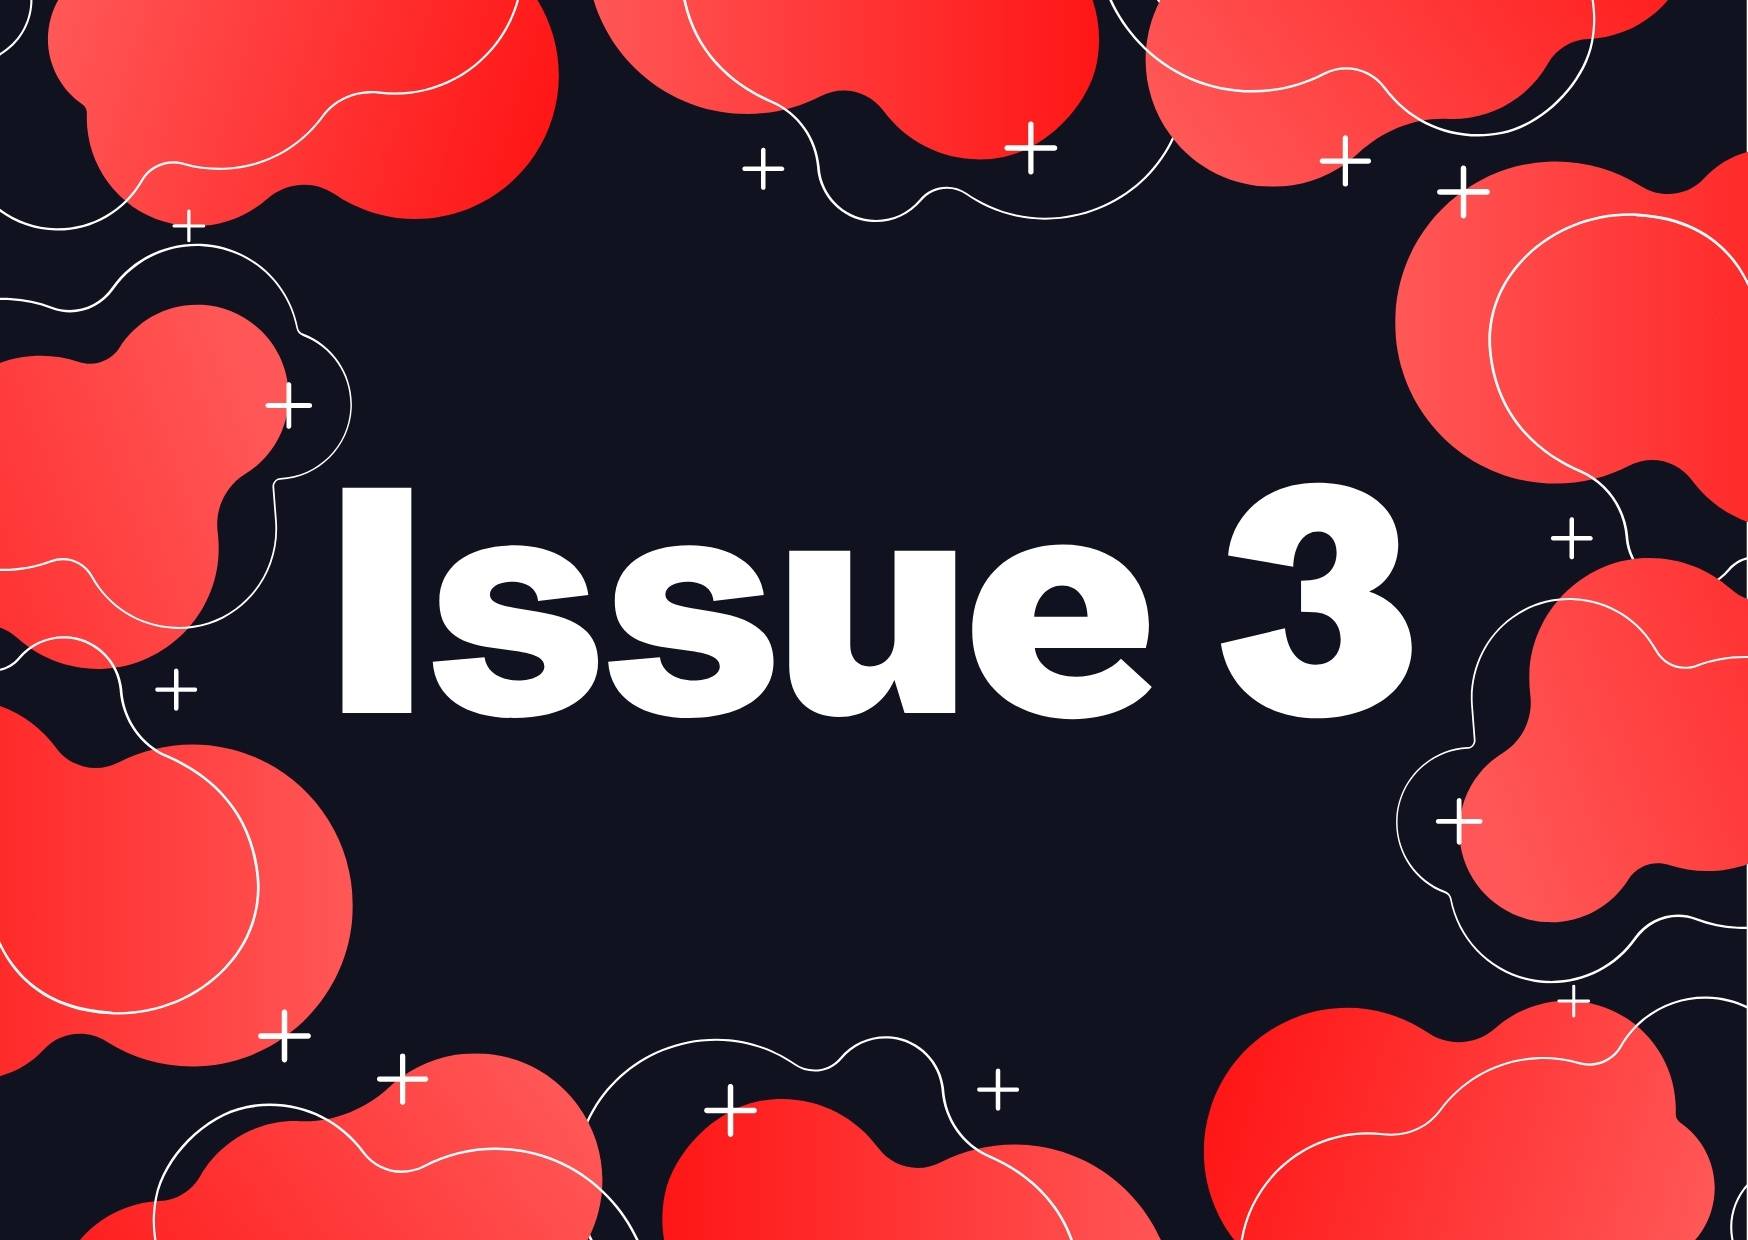 VOLUME 2: ISSUE 3